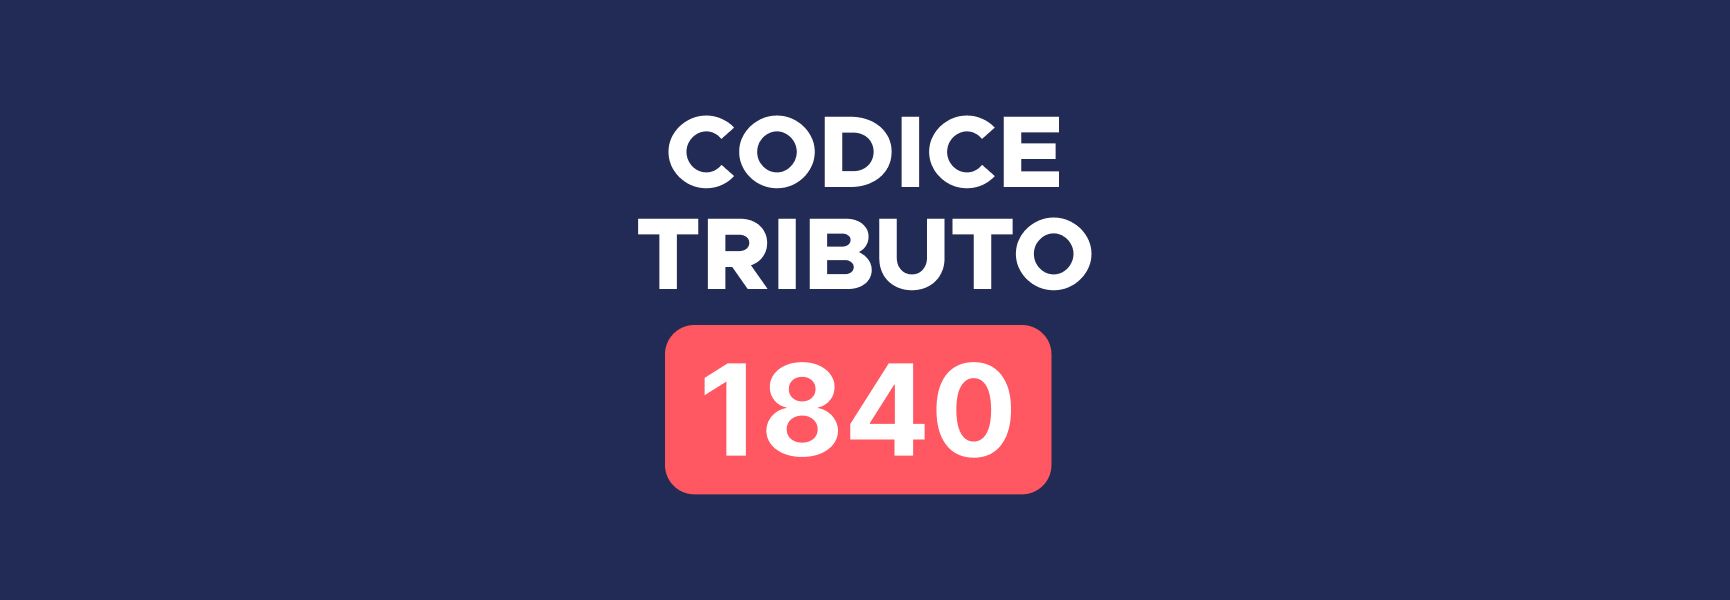 Codice tributo 1840